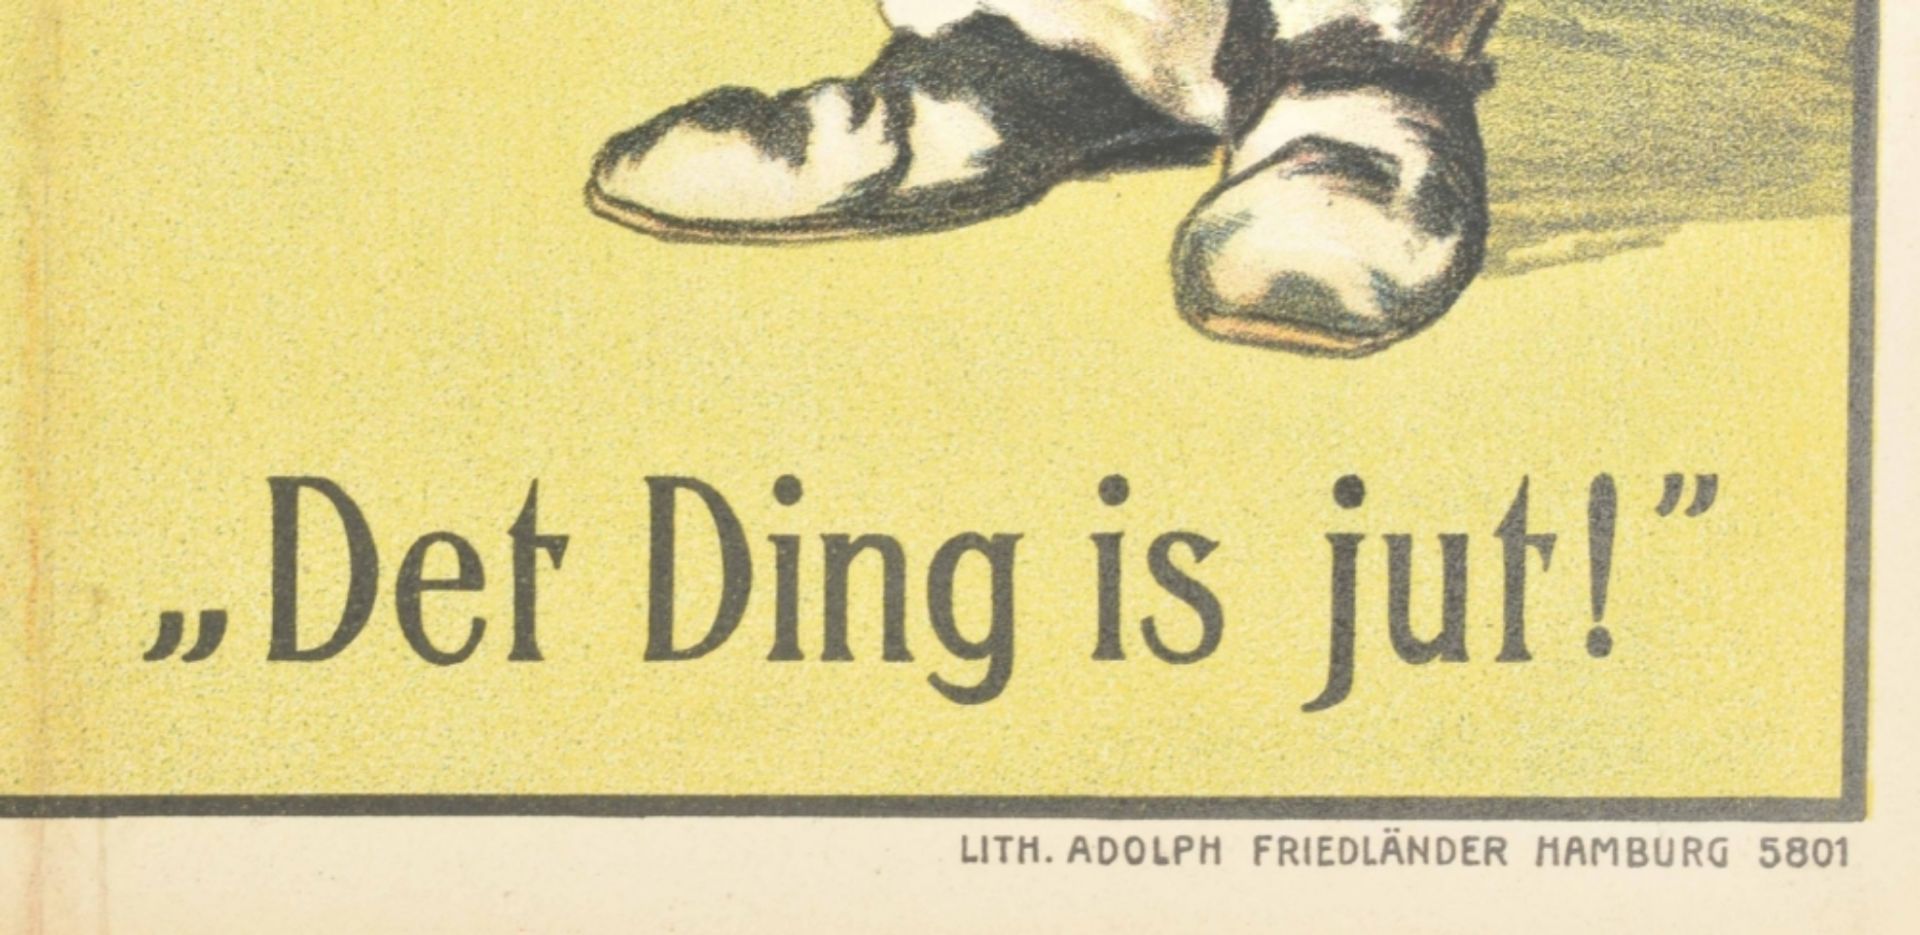 [Entertainment] Parkettsitz no. 10. Det Ding is jut! Friedländer, Hamburg, 1913 - Bild 3 aus 4